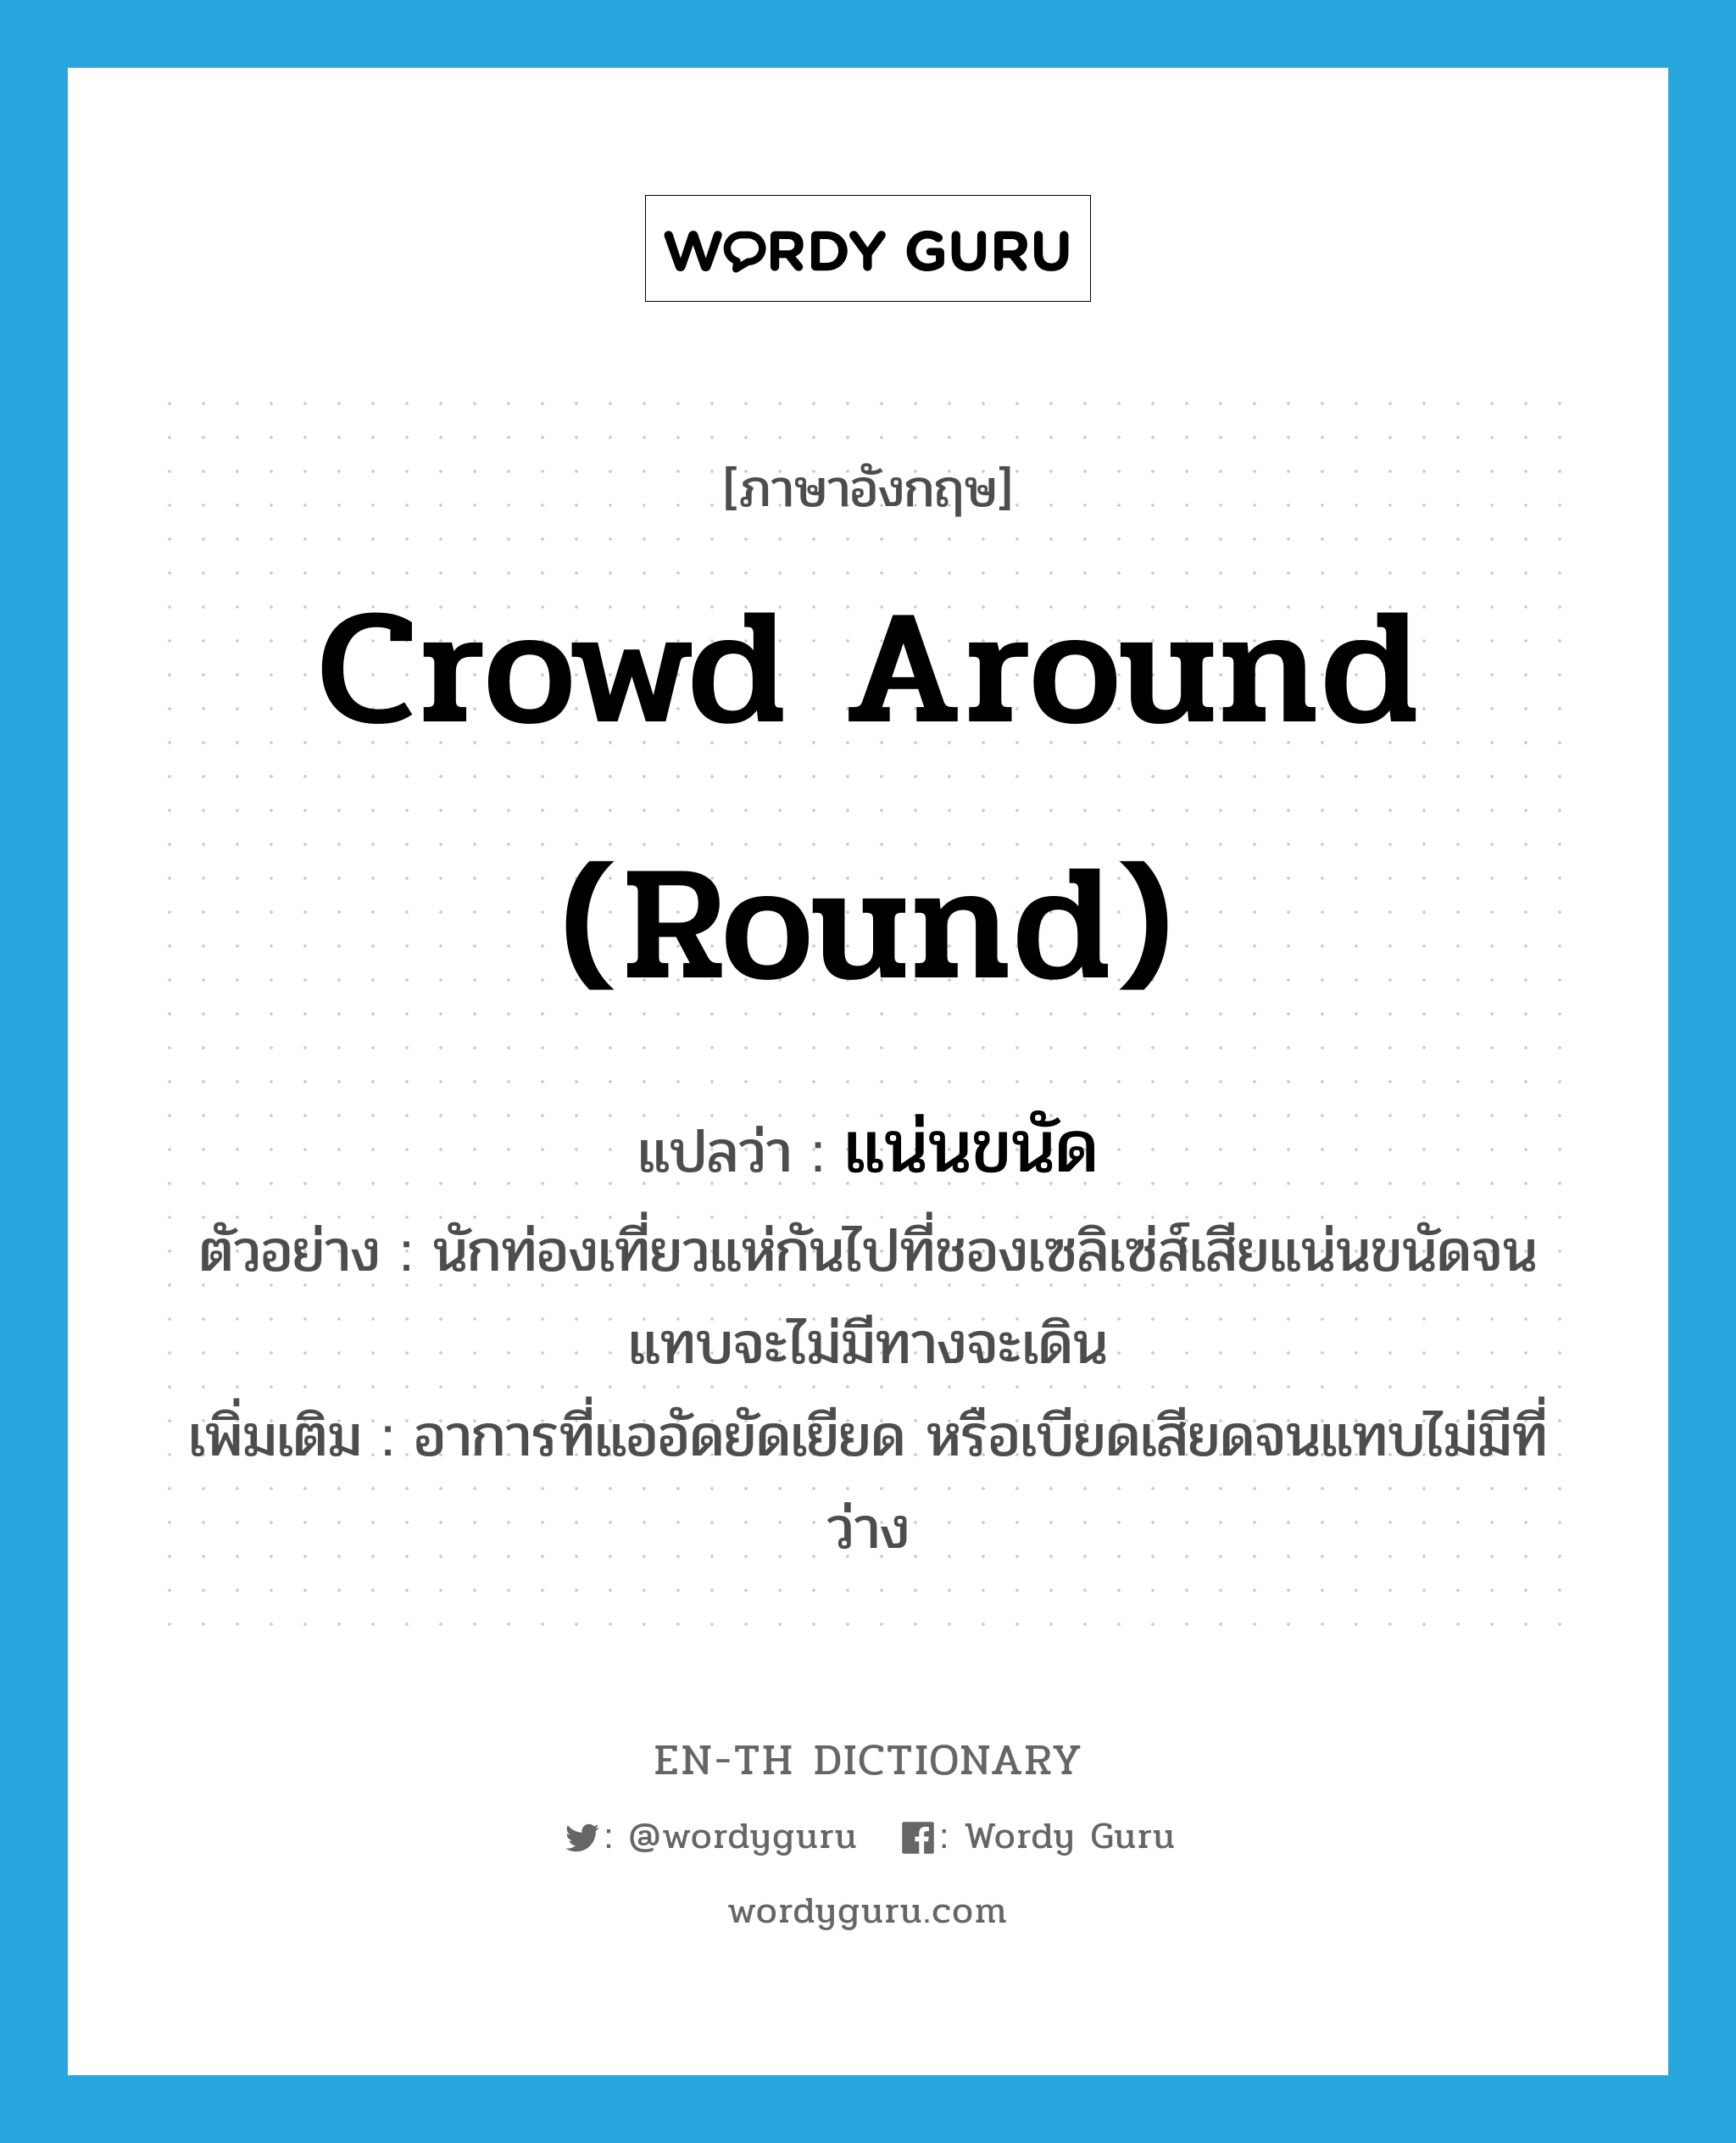 crowd around (round) แปลว่า?, คำศัพท์ภาษาอังกฤษ crowd around (round) แปลว่า แน่นขนัด ประเภท V ตัวอย่าง นักท่องเที่ยวแห่กันไปที่ชองเซลิเซ่ส์เสียแน่นขนัดจนแทบจะไม่มีทางจะเดิน เพิ่มเติม อาการที่แออัดยัดเยียด หรือเบียดเสียดจนแทบไม่มีที่ว่าง หมวด V